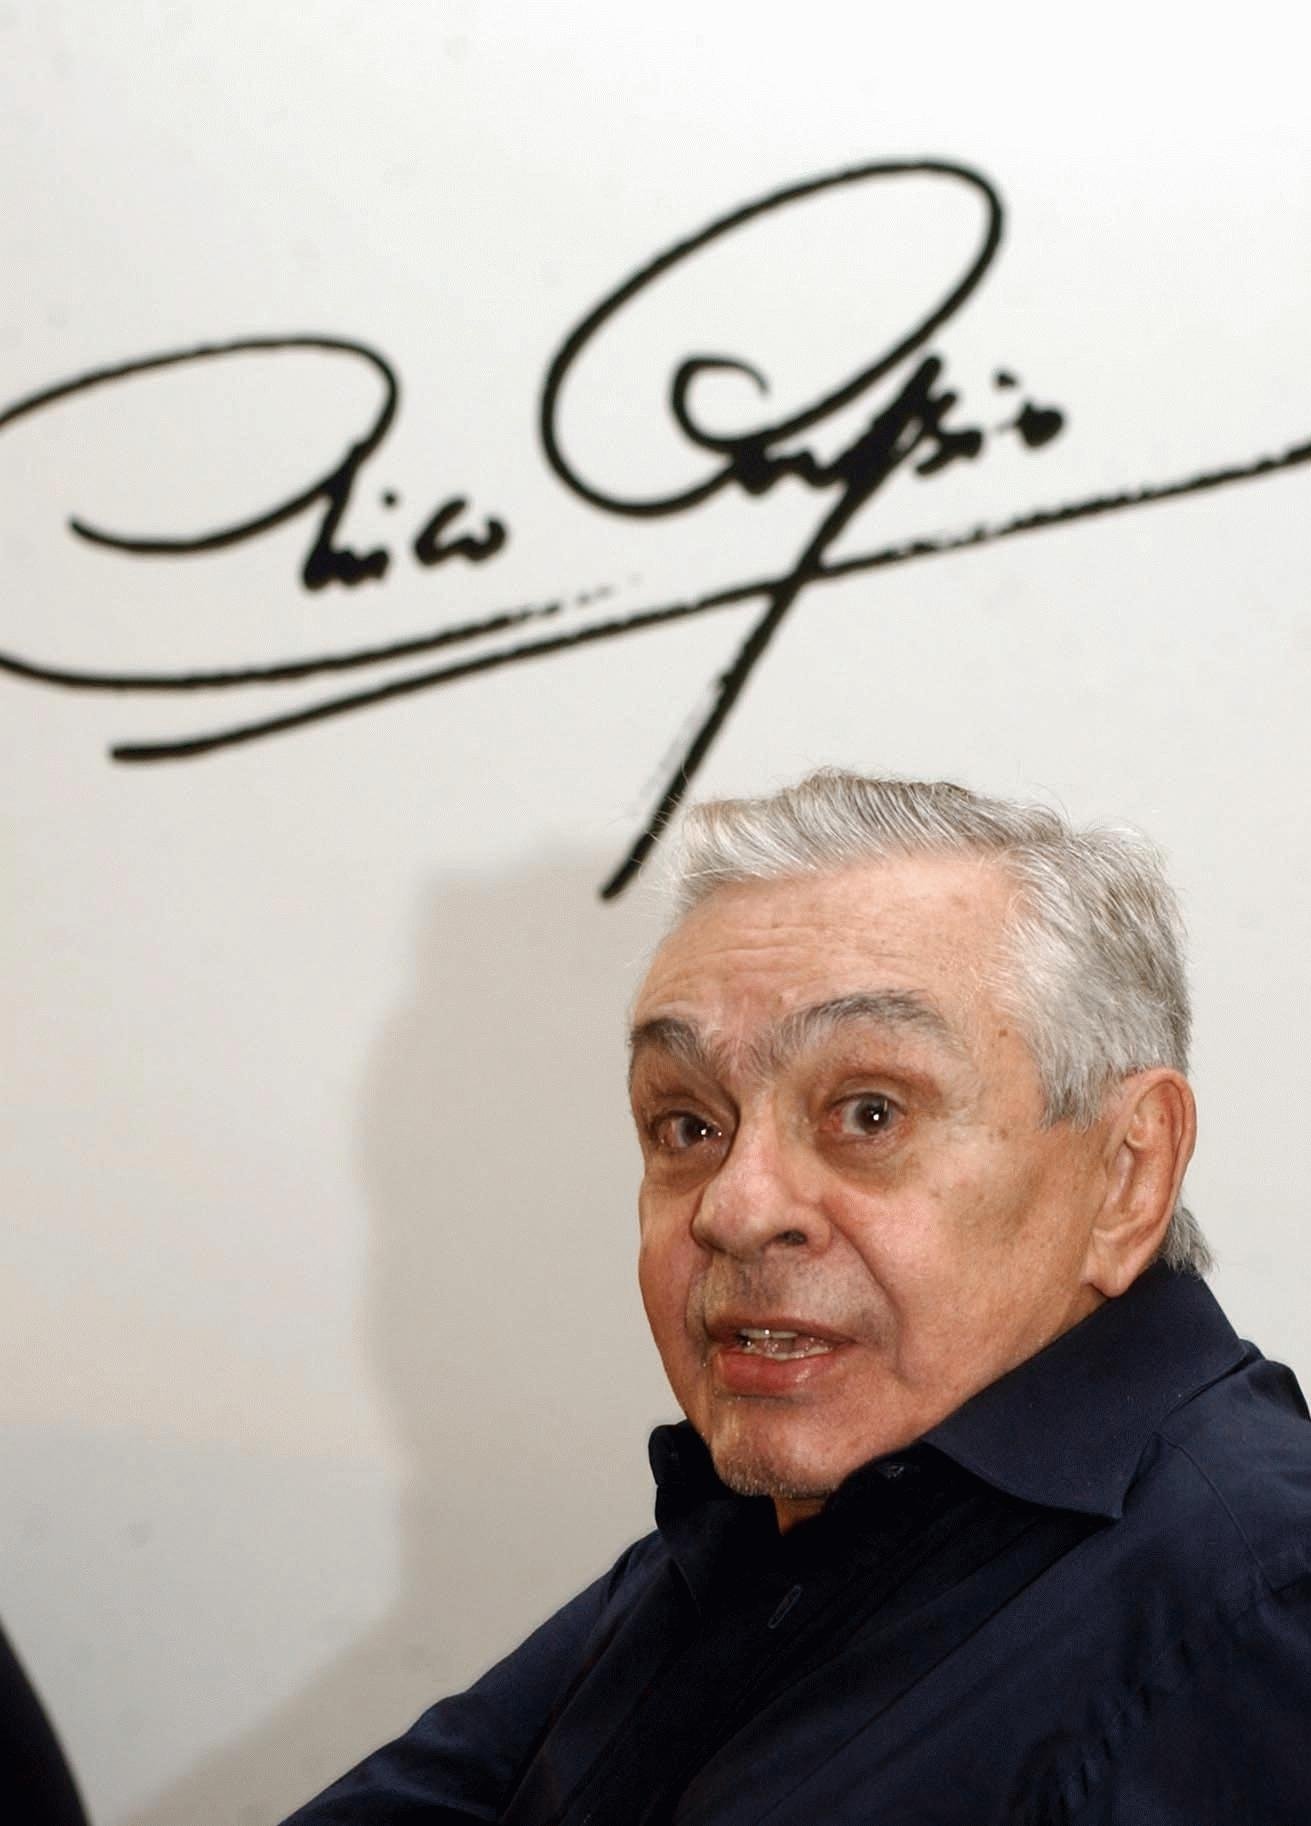 Chico Anysio morreu em 23/3/2012, aos 80 anos, deixando um imenso legado artístico no Brasil. Com 63 anos de carreira, tinha um talento múltiplo: foi locutor de rádio, ator, comentarista de futebol, roteirista, escritor, produtor. Mas, acima de tudo, foi humorista.  